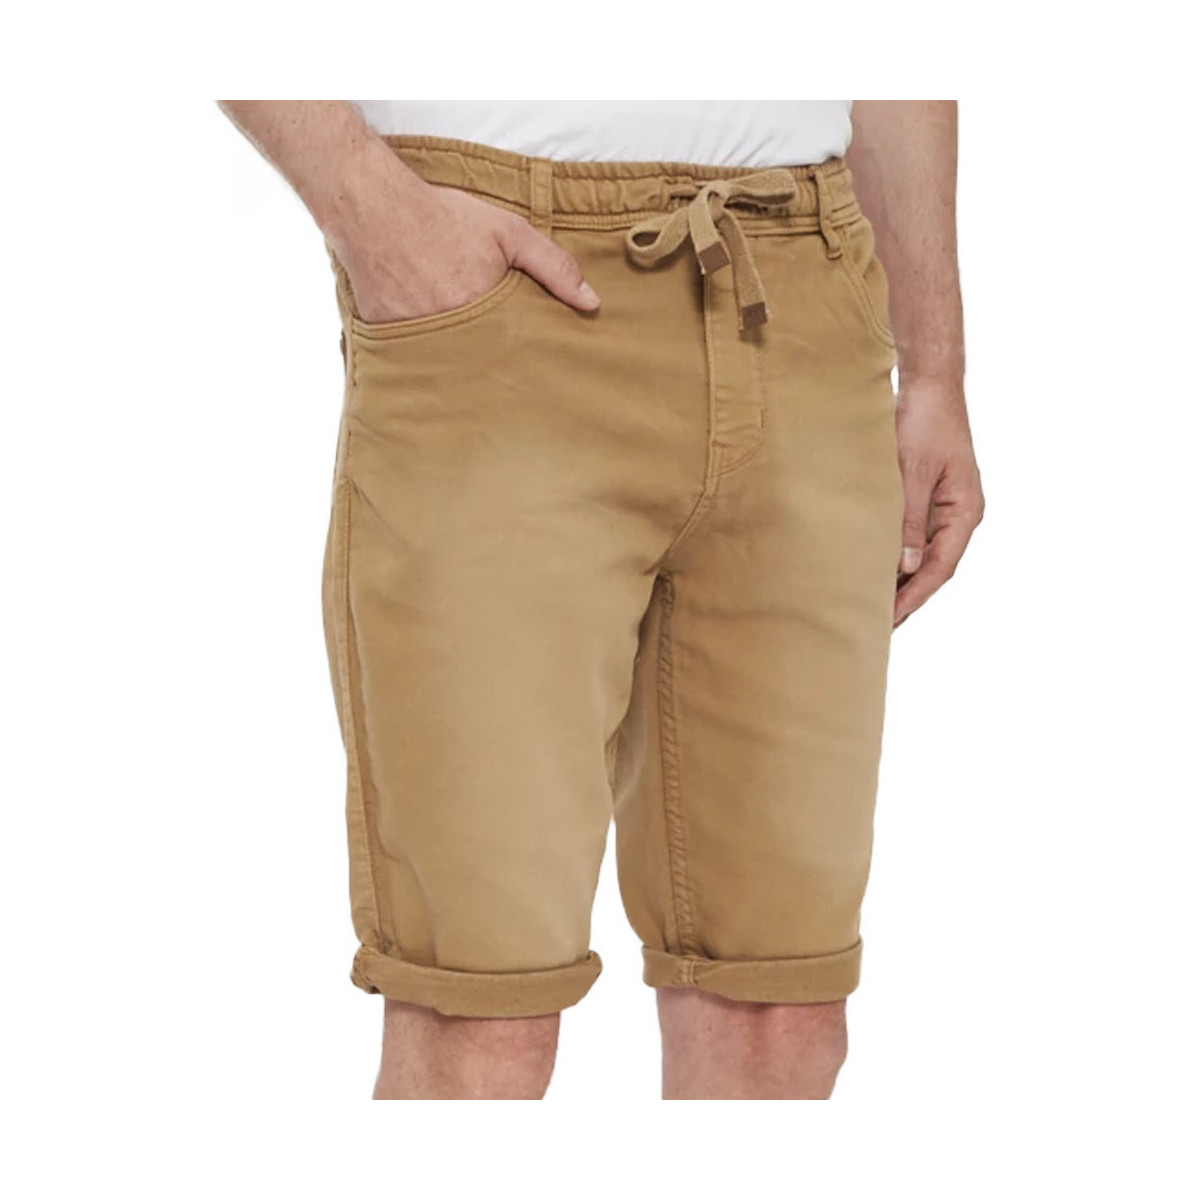 textil Hombre Shorts / Bermudas Paname Brothers  Beige